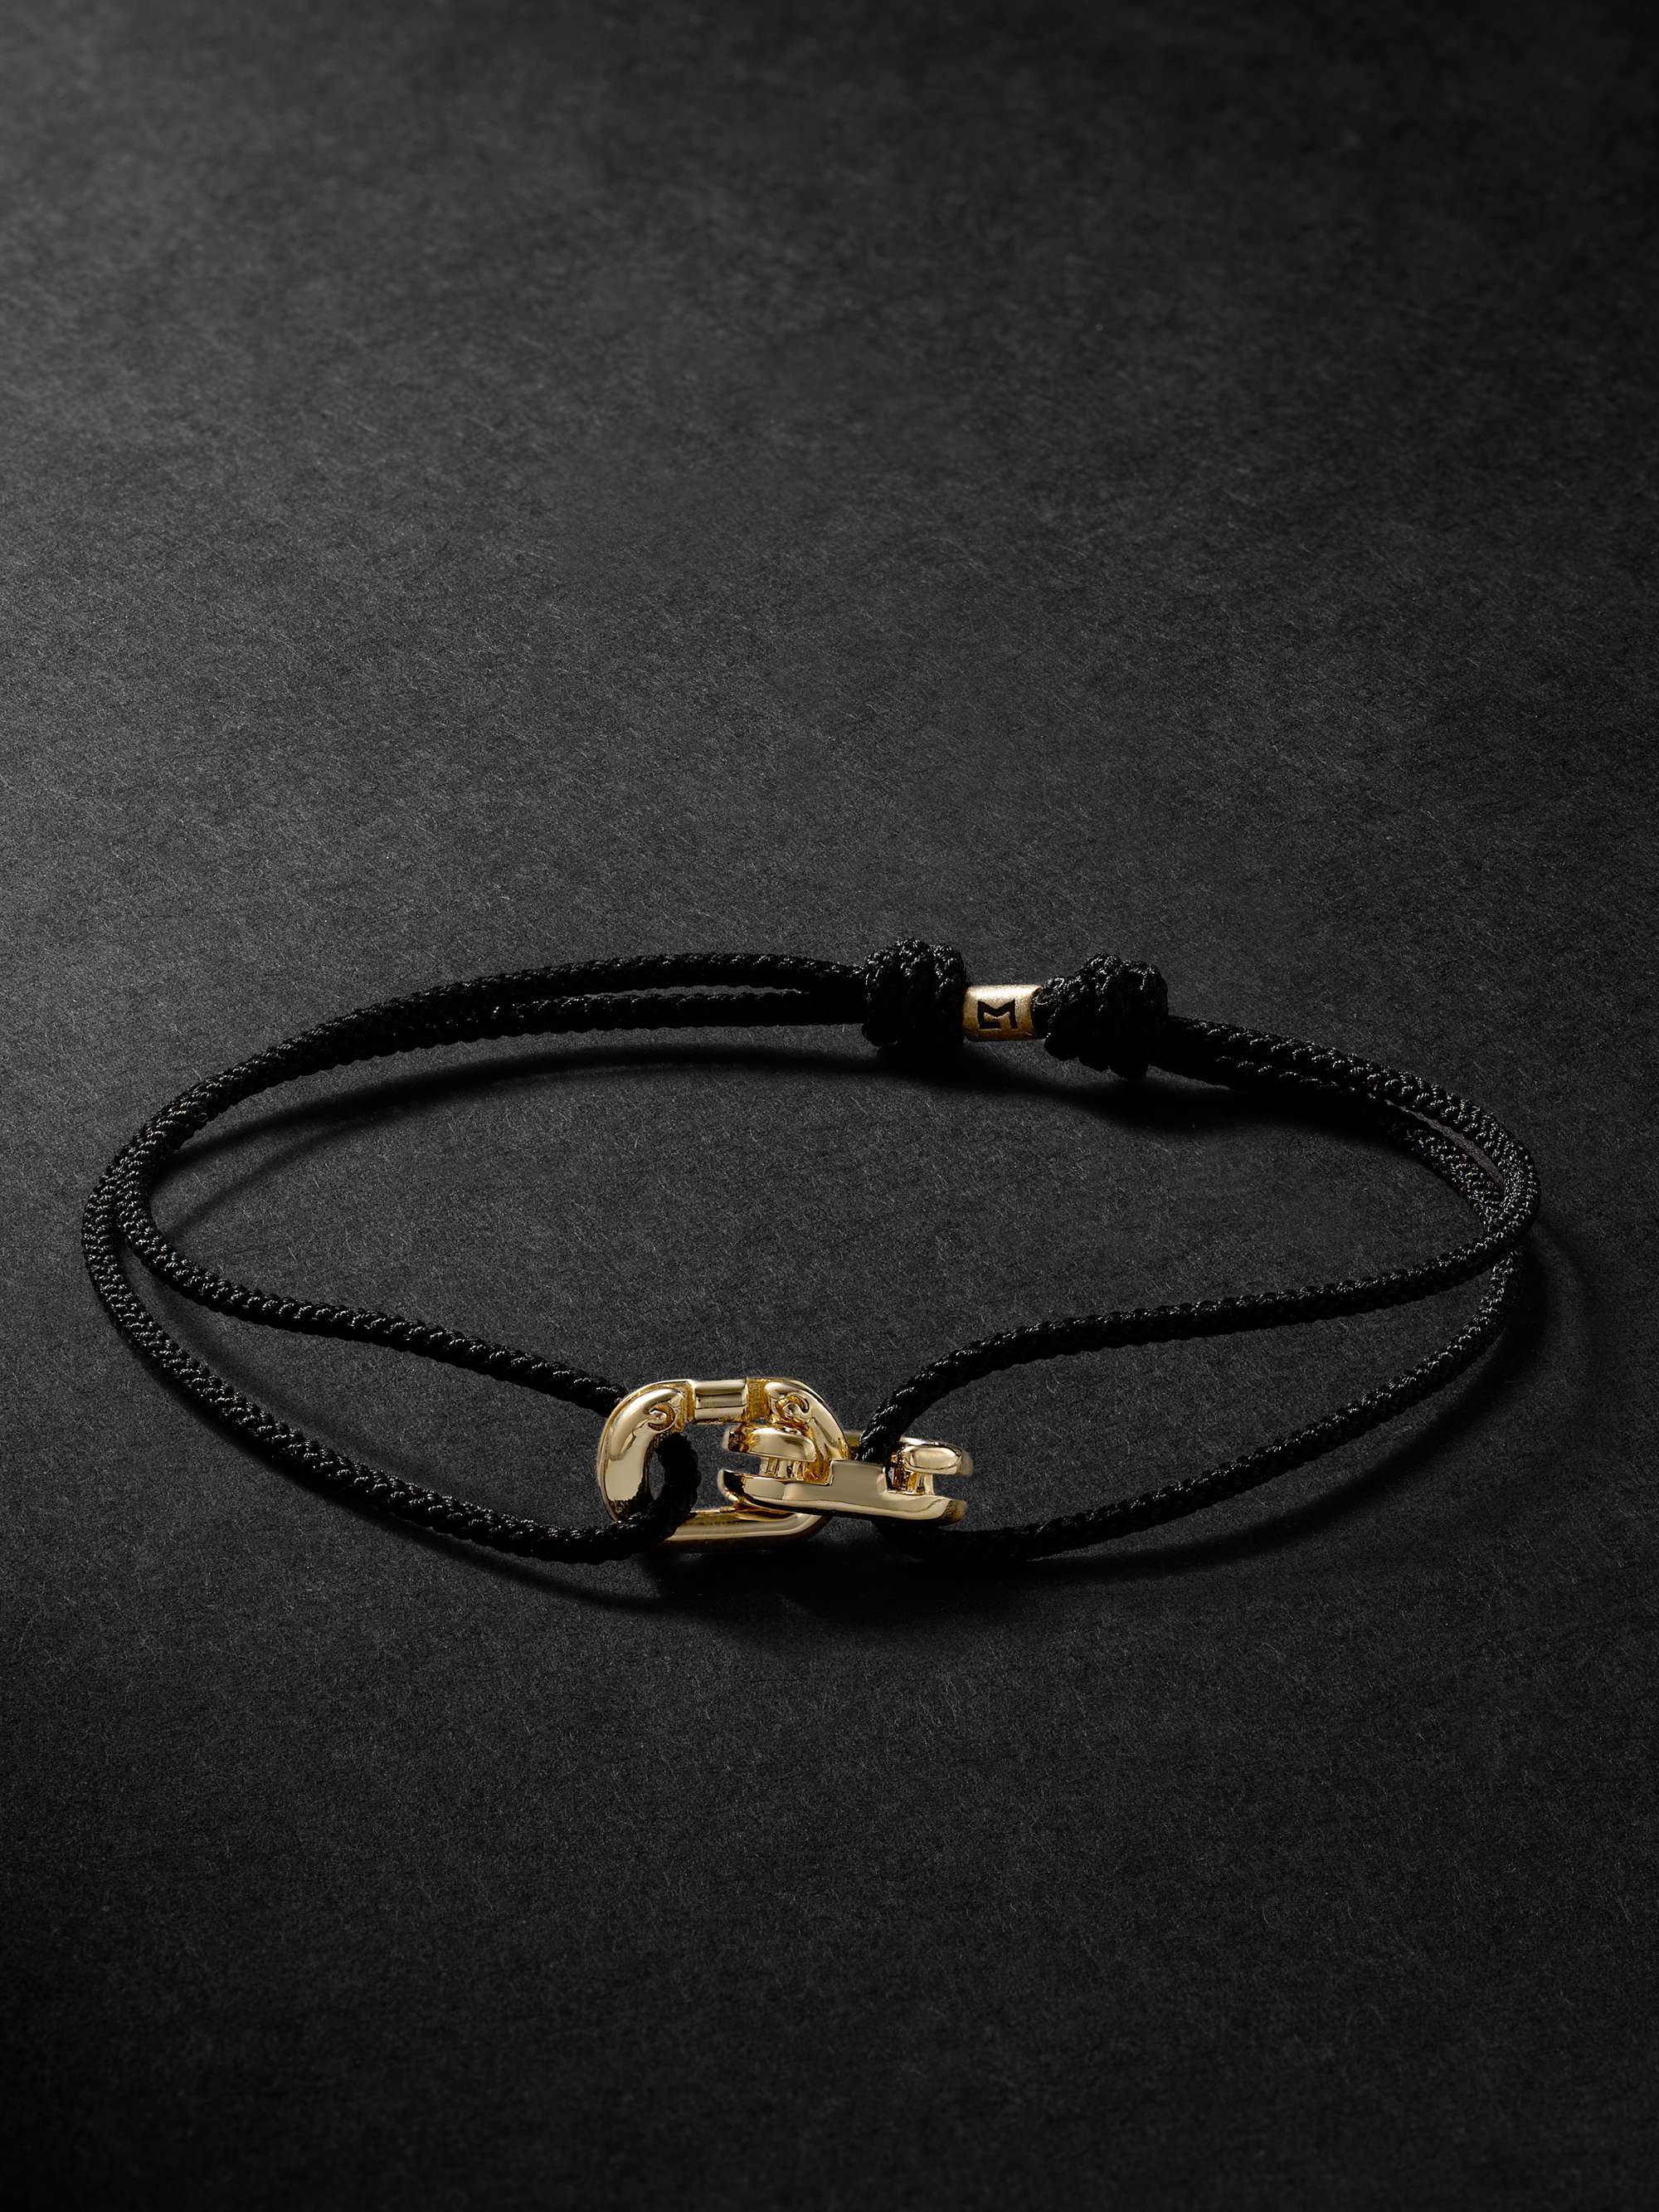 LUIS MORAIS Gold and Cord Bracelet